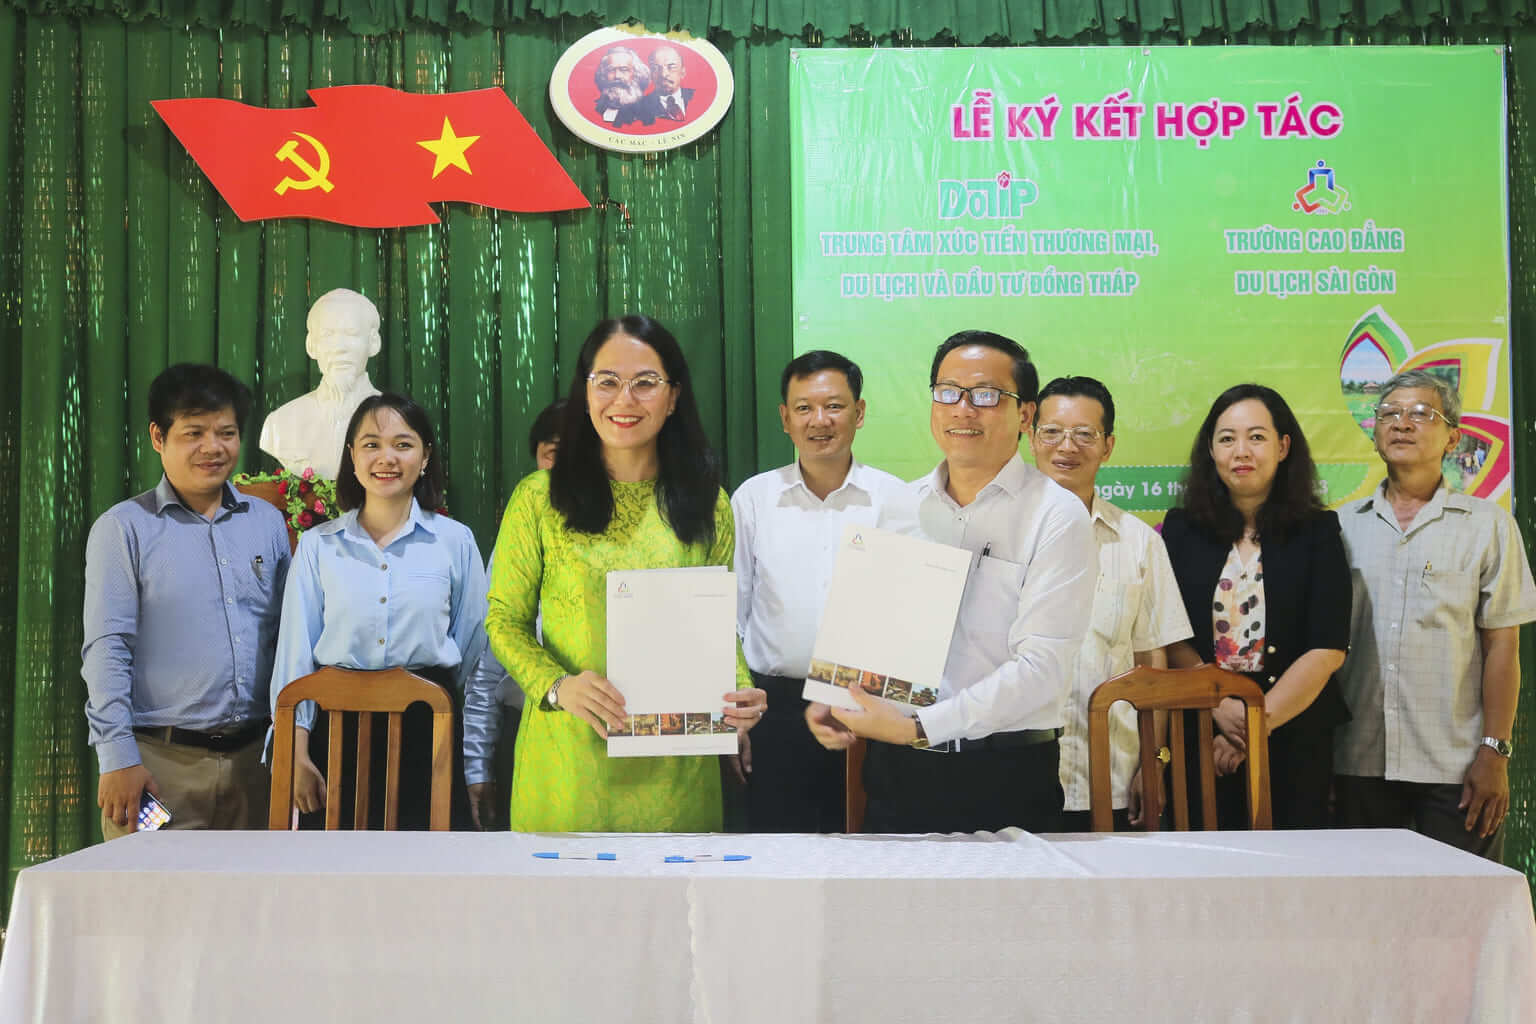 Trường Cao đẳng Du lịch Sài Gòn và Trung tâm Xúc tiến Thương mại, Du lịch và Đầu tư Đồng Tháp đã ký biên bản ghi nhớ hợp tác